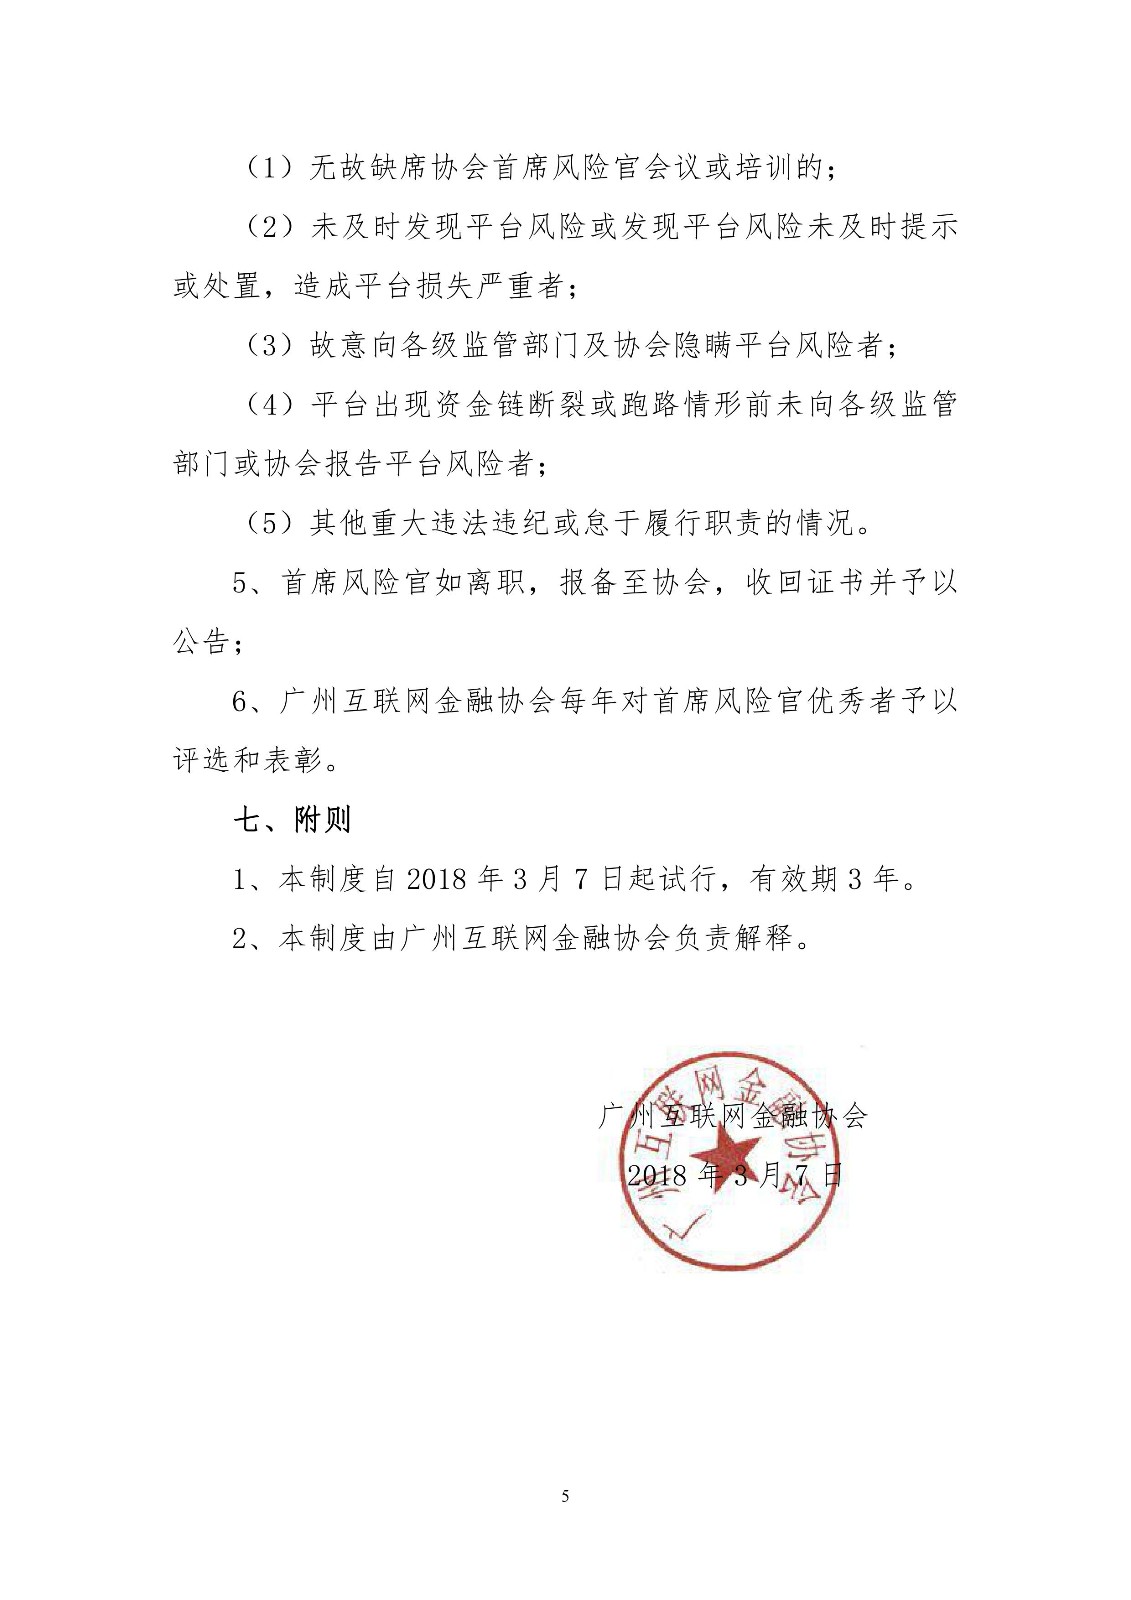 广州下发首席风险官制度 相关工作必须5年以上6